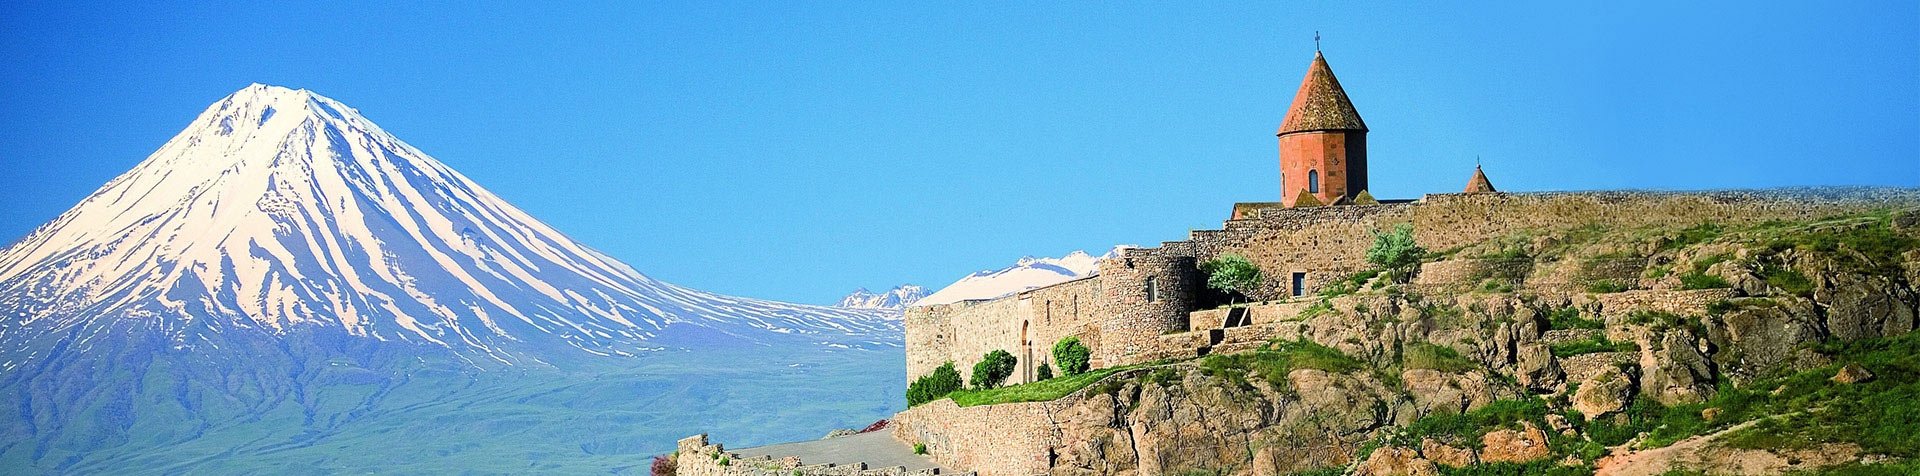 Армения в топ-10 мест в туризме